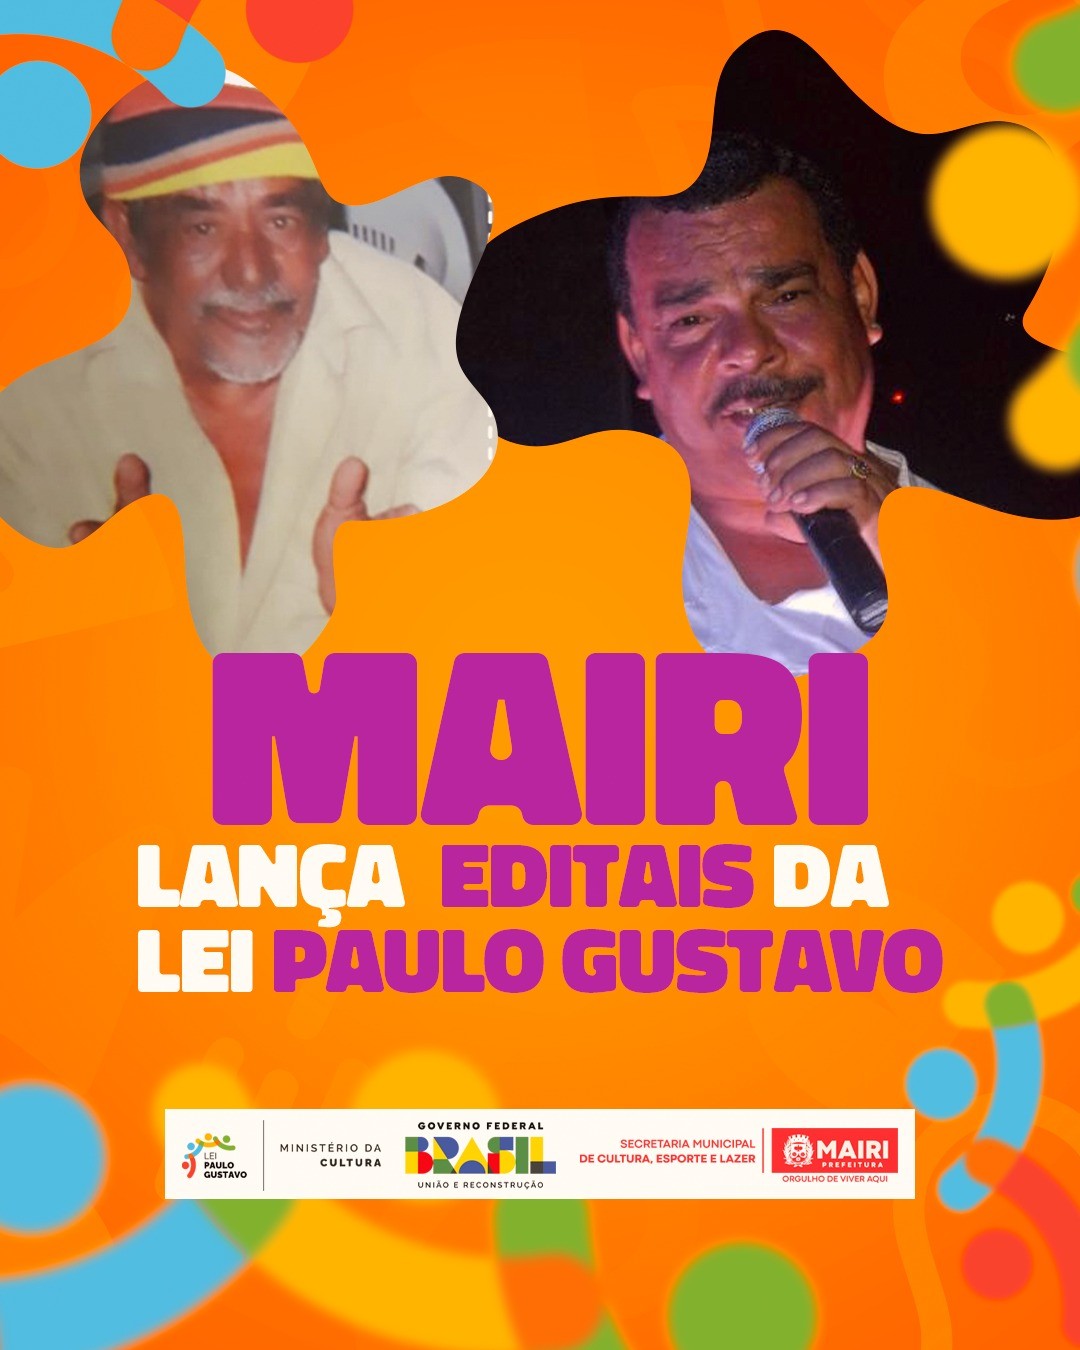 Mairi lança editais da lei Paulo Gustavo